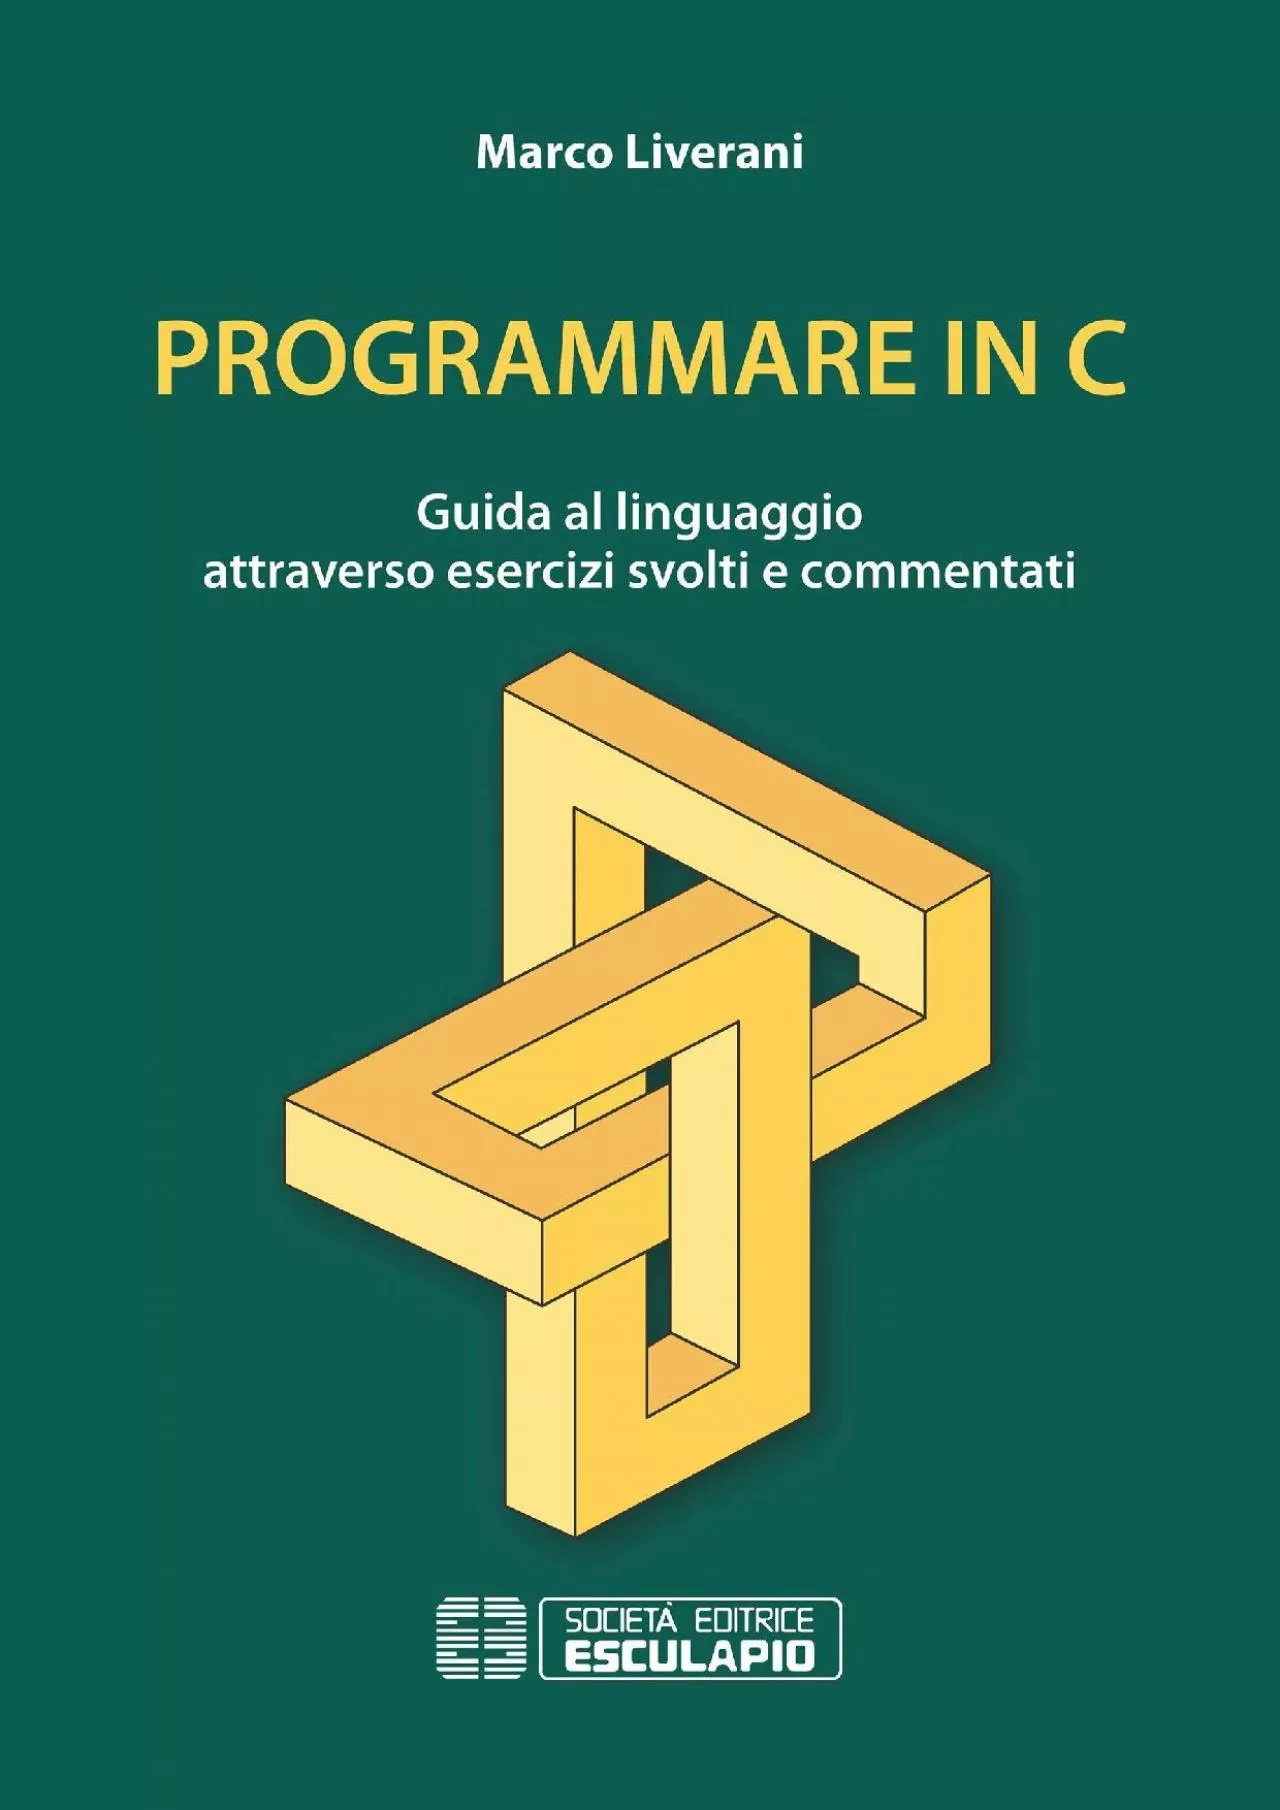 [READING BOOK]-Programmare in C. Guida al linguaggio attraverso esercizi svolti e commentati